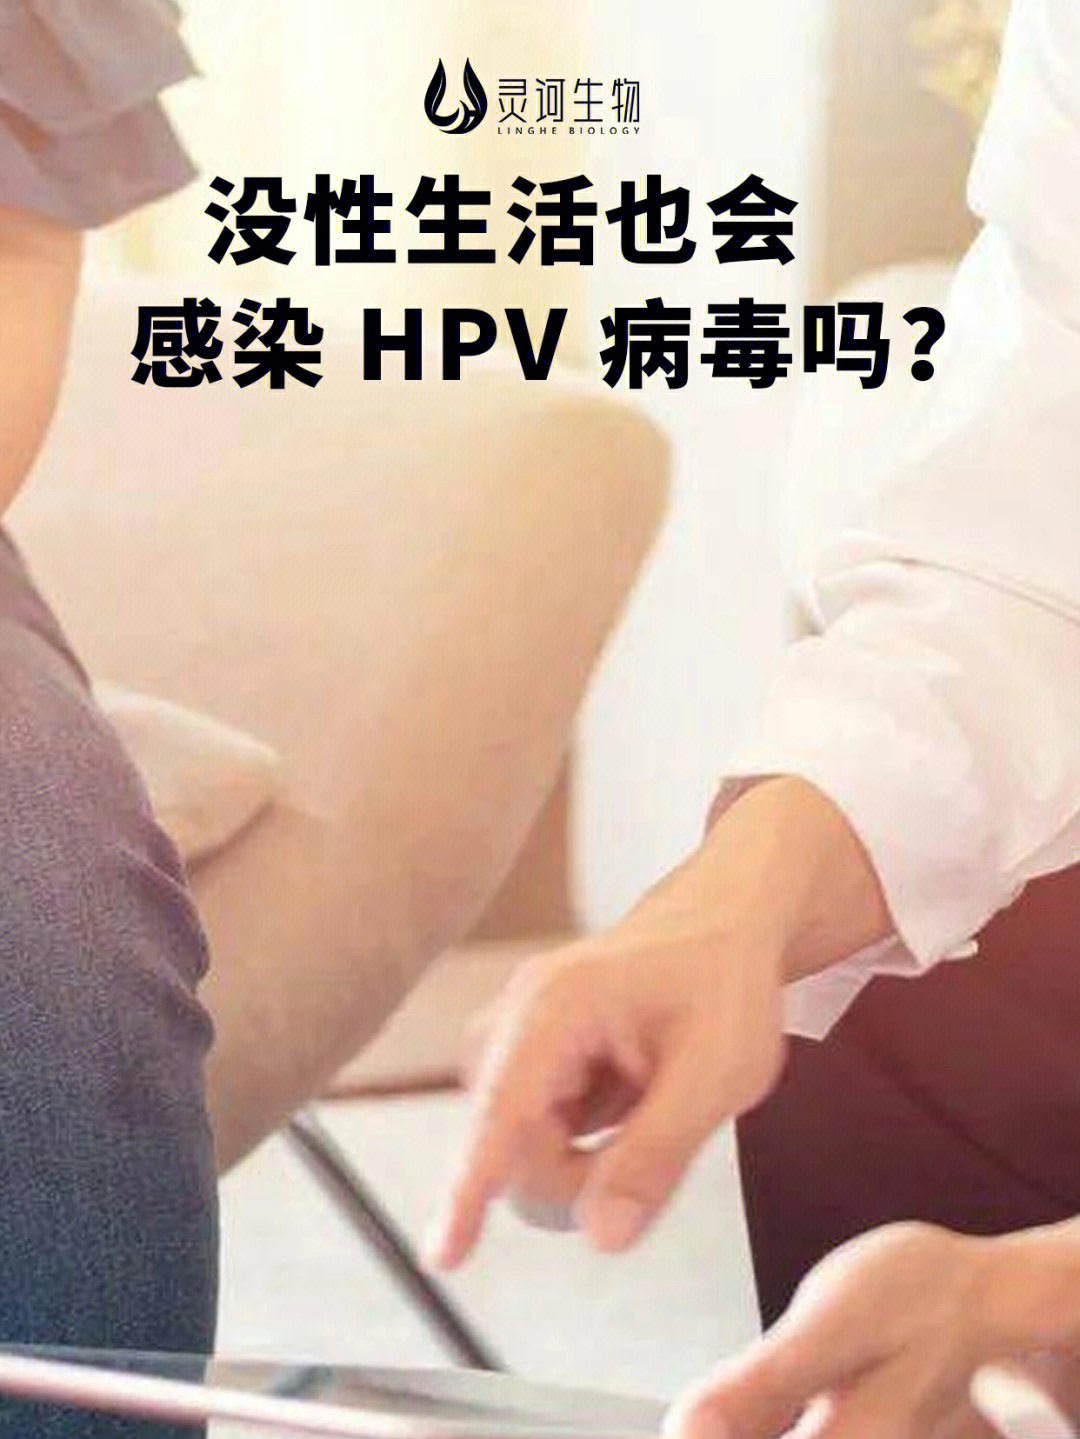 嗓子感染hpv病毒图片图片